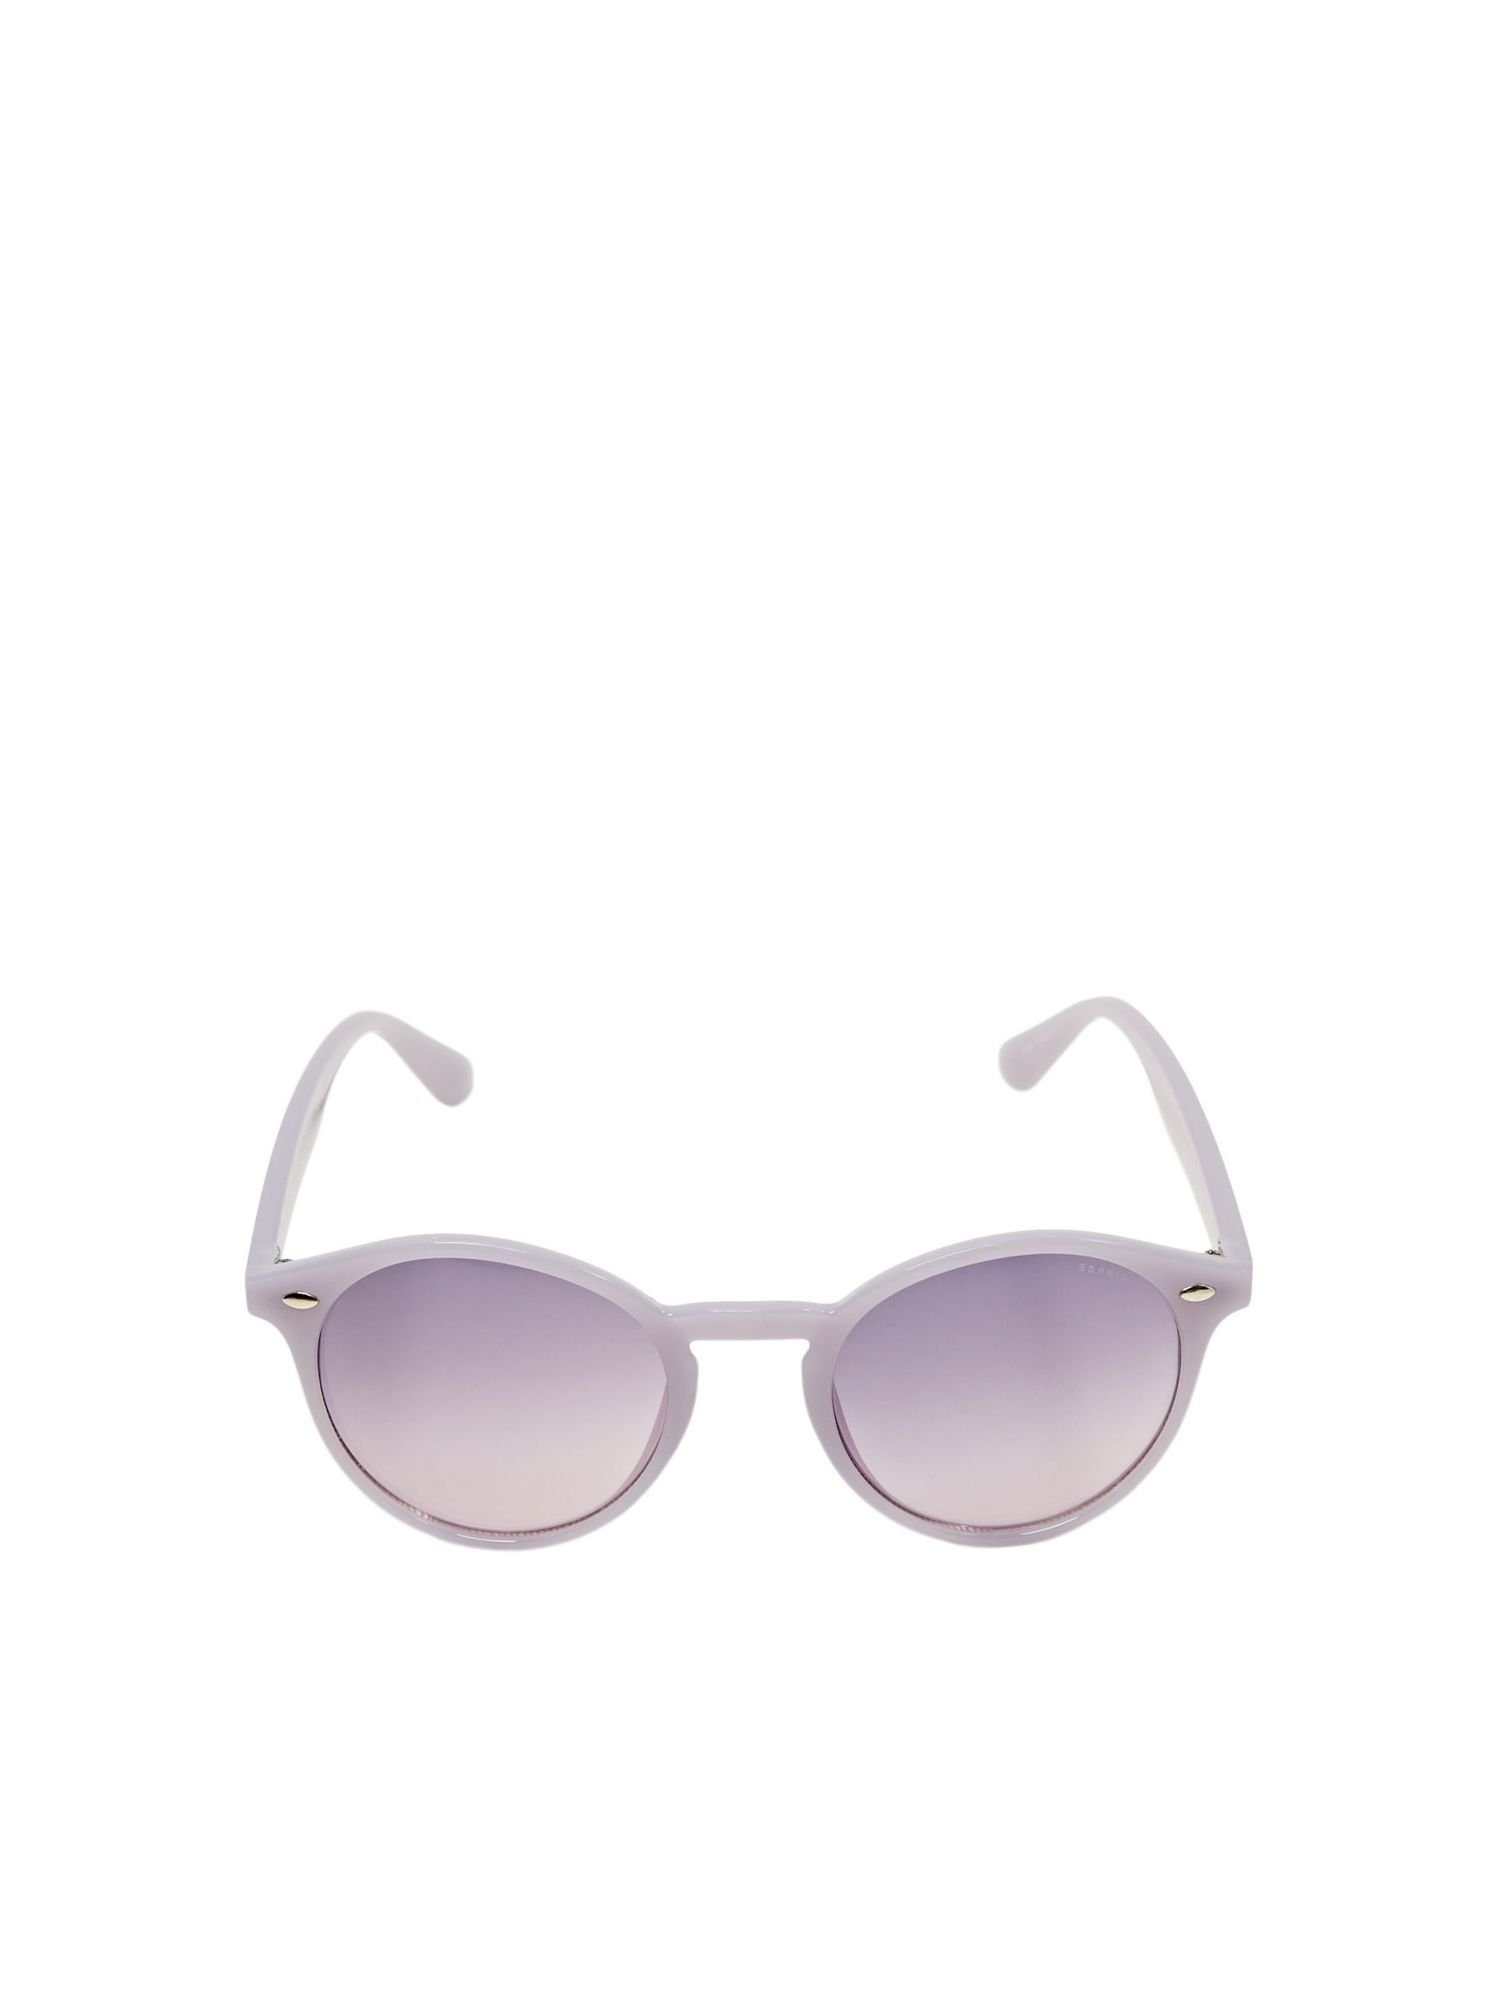 PURPLE runden Sonnenbrille Gläsern mit Esprit Sonnenbrille